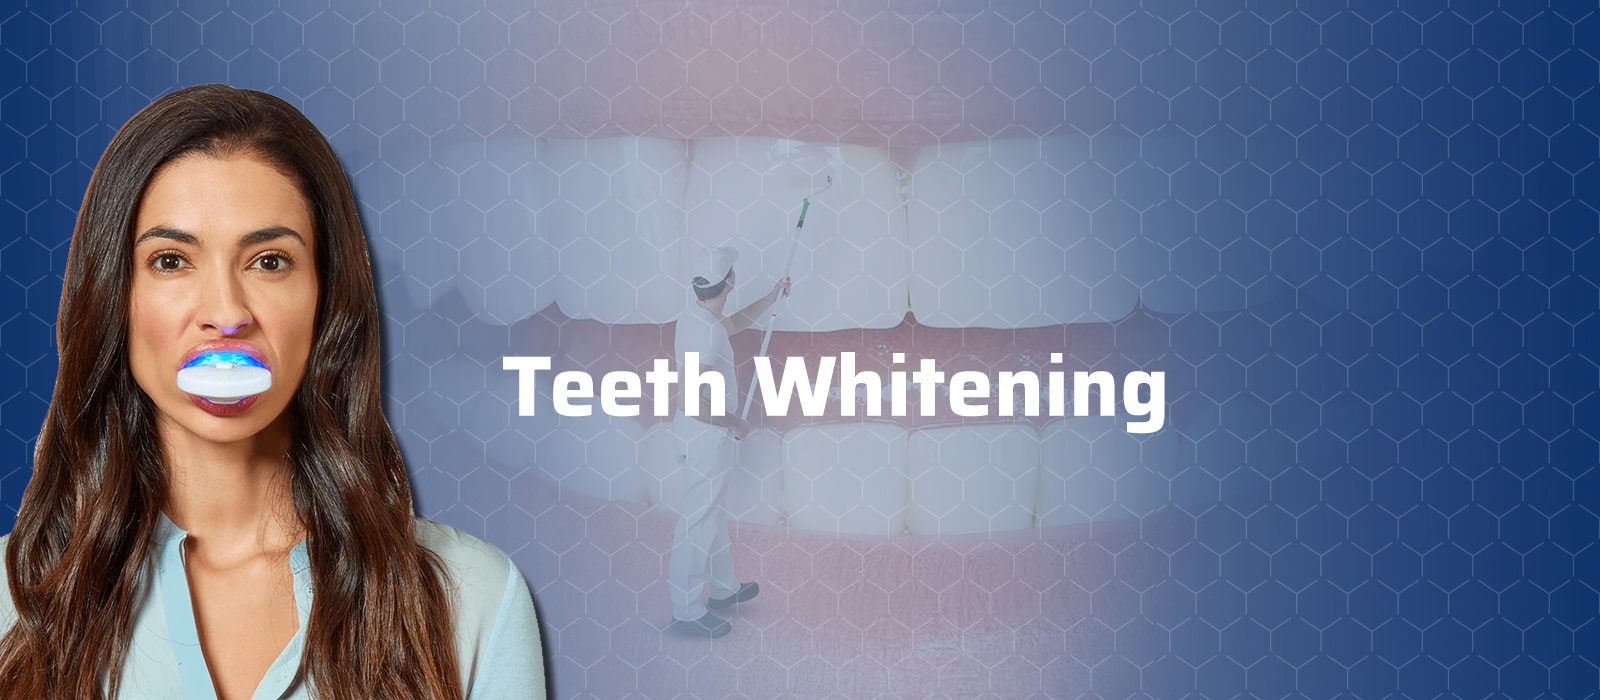 Teeth Whitening in Turkey